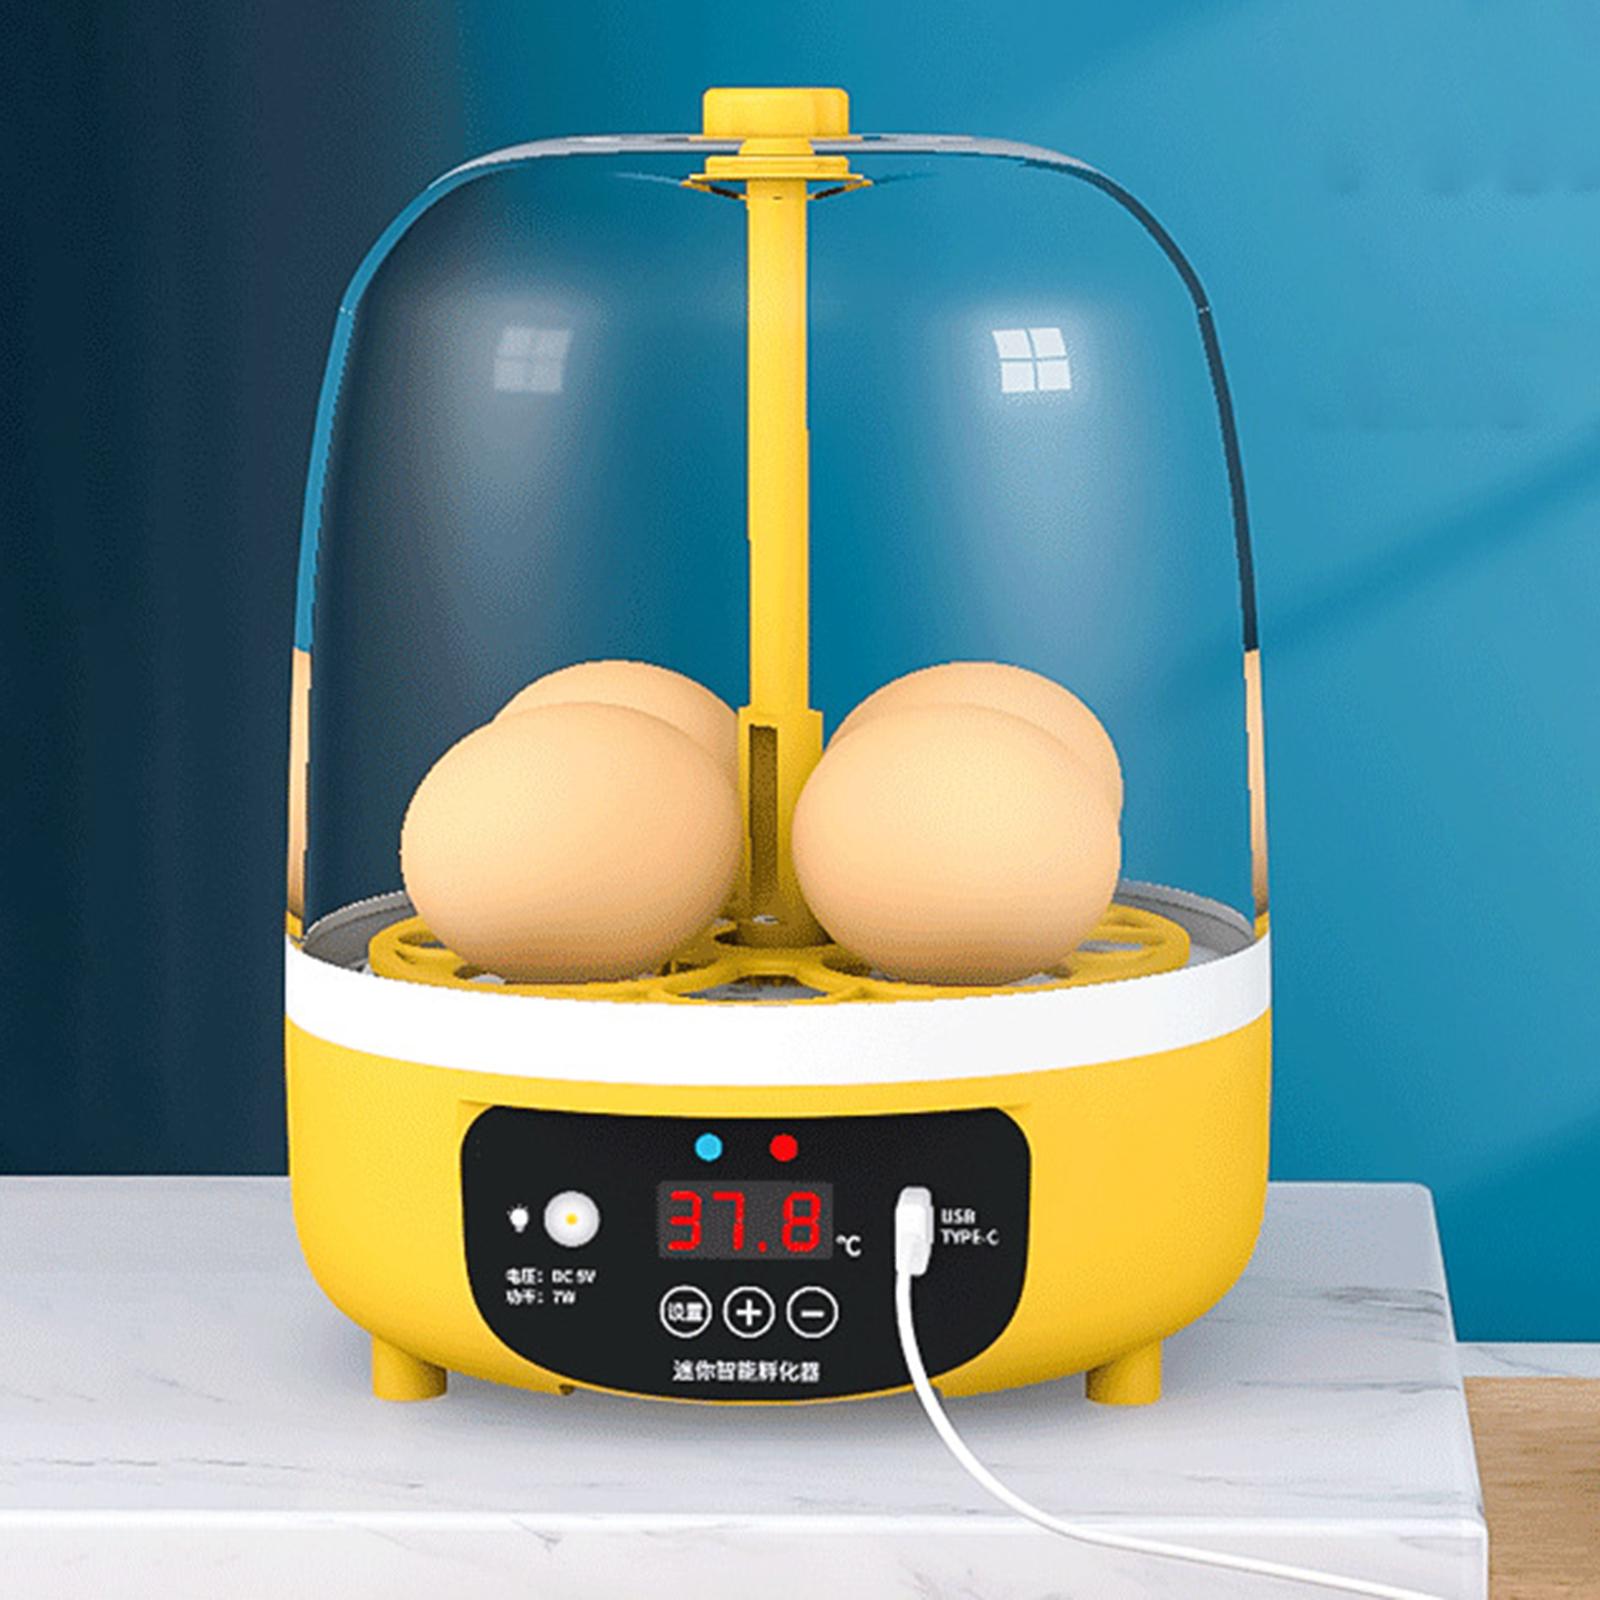 Loviver Máy ấp trứng kỹ thuật số Rõ Ràng Top Bìa Trứng khay ấp Trứng Máy Hatcher Gà Lồng Ấp Cho Chim Chim Chim Cút Chim Bồ Câu Bộ chuyển đổi Mỹ